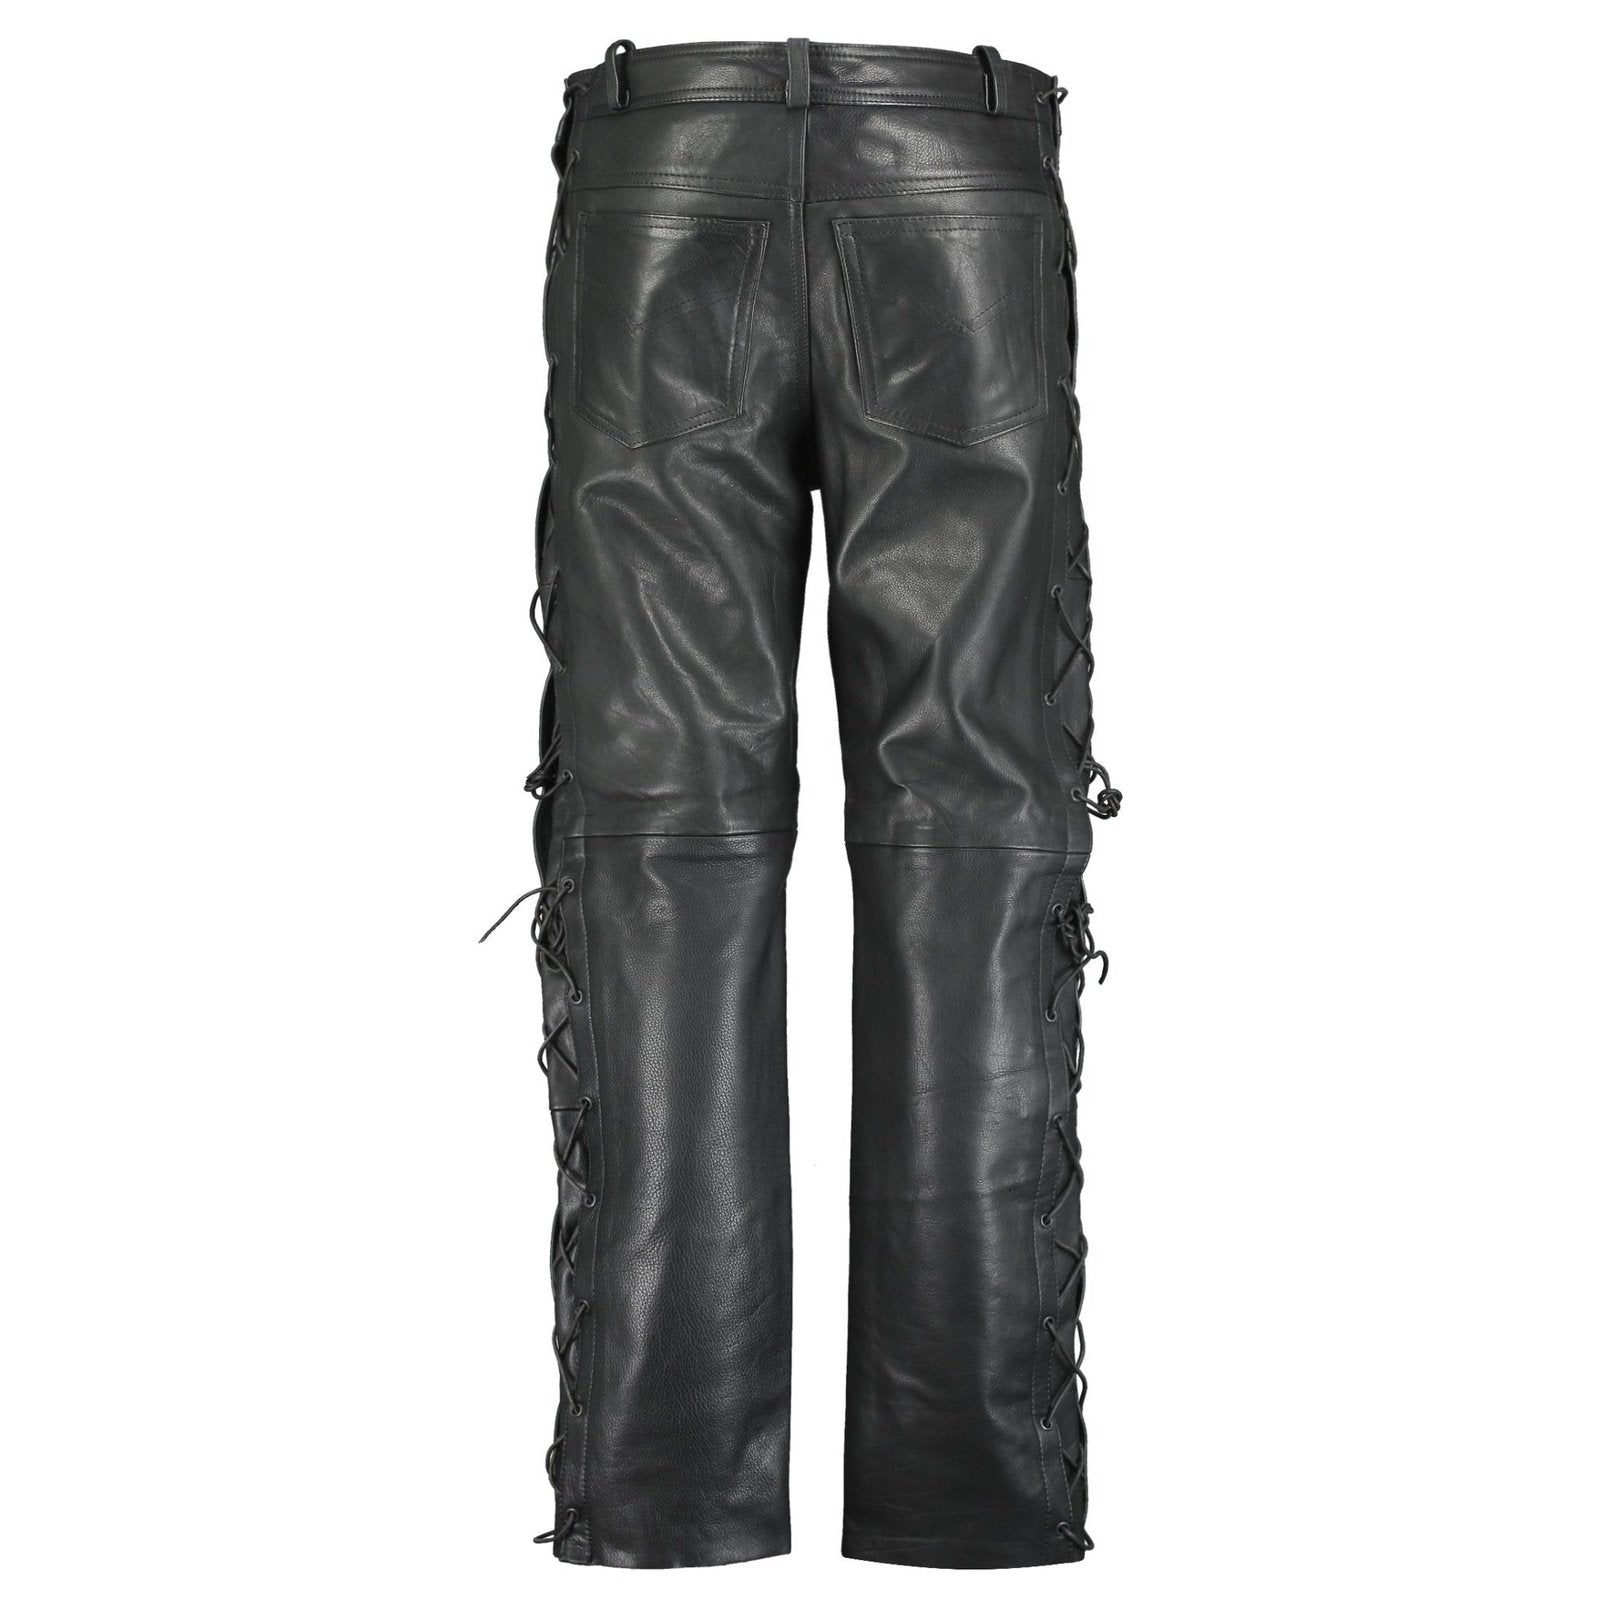 JIM MORRISON JEANS Pants trousers premium quality Cow Plain Leather £69.99  - PicClick UK